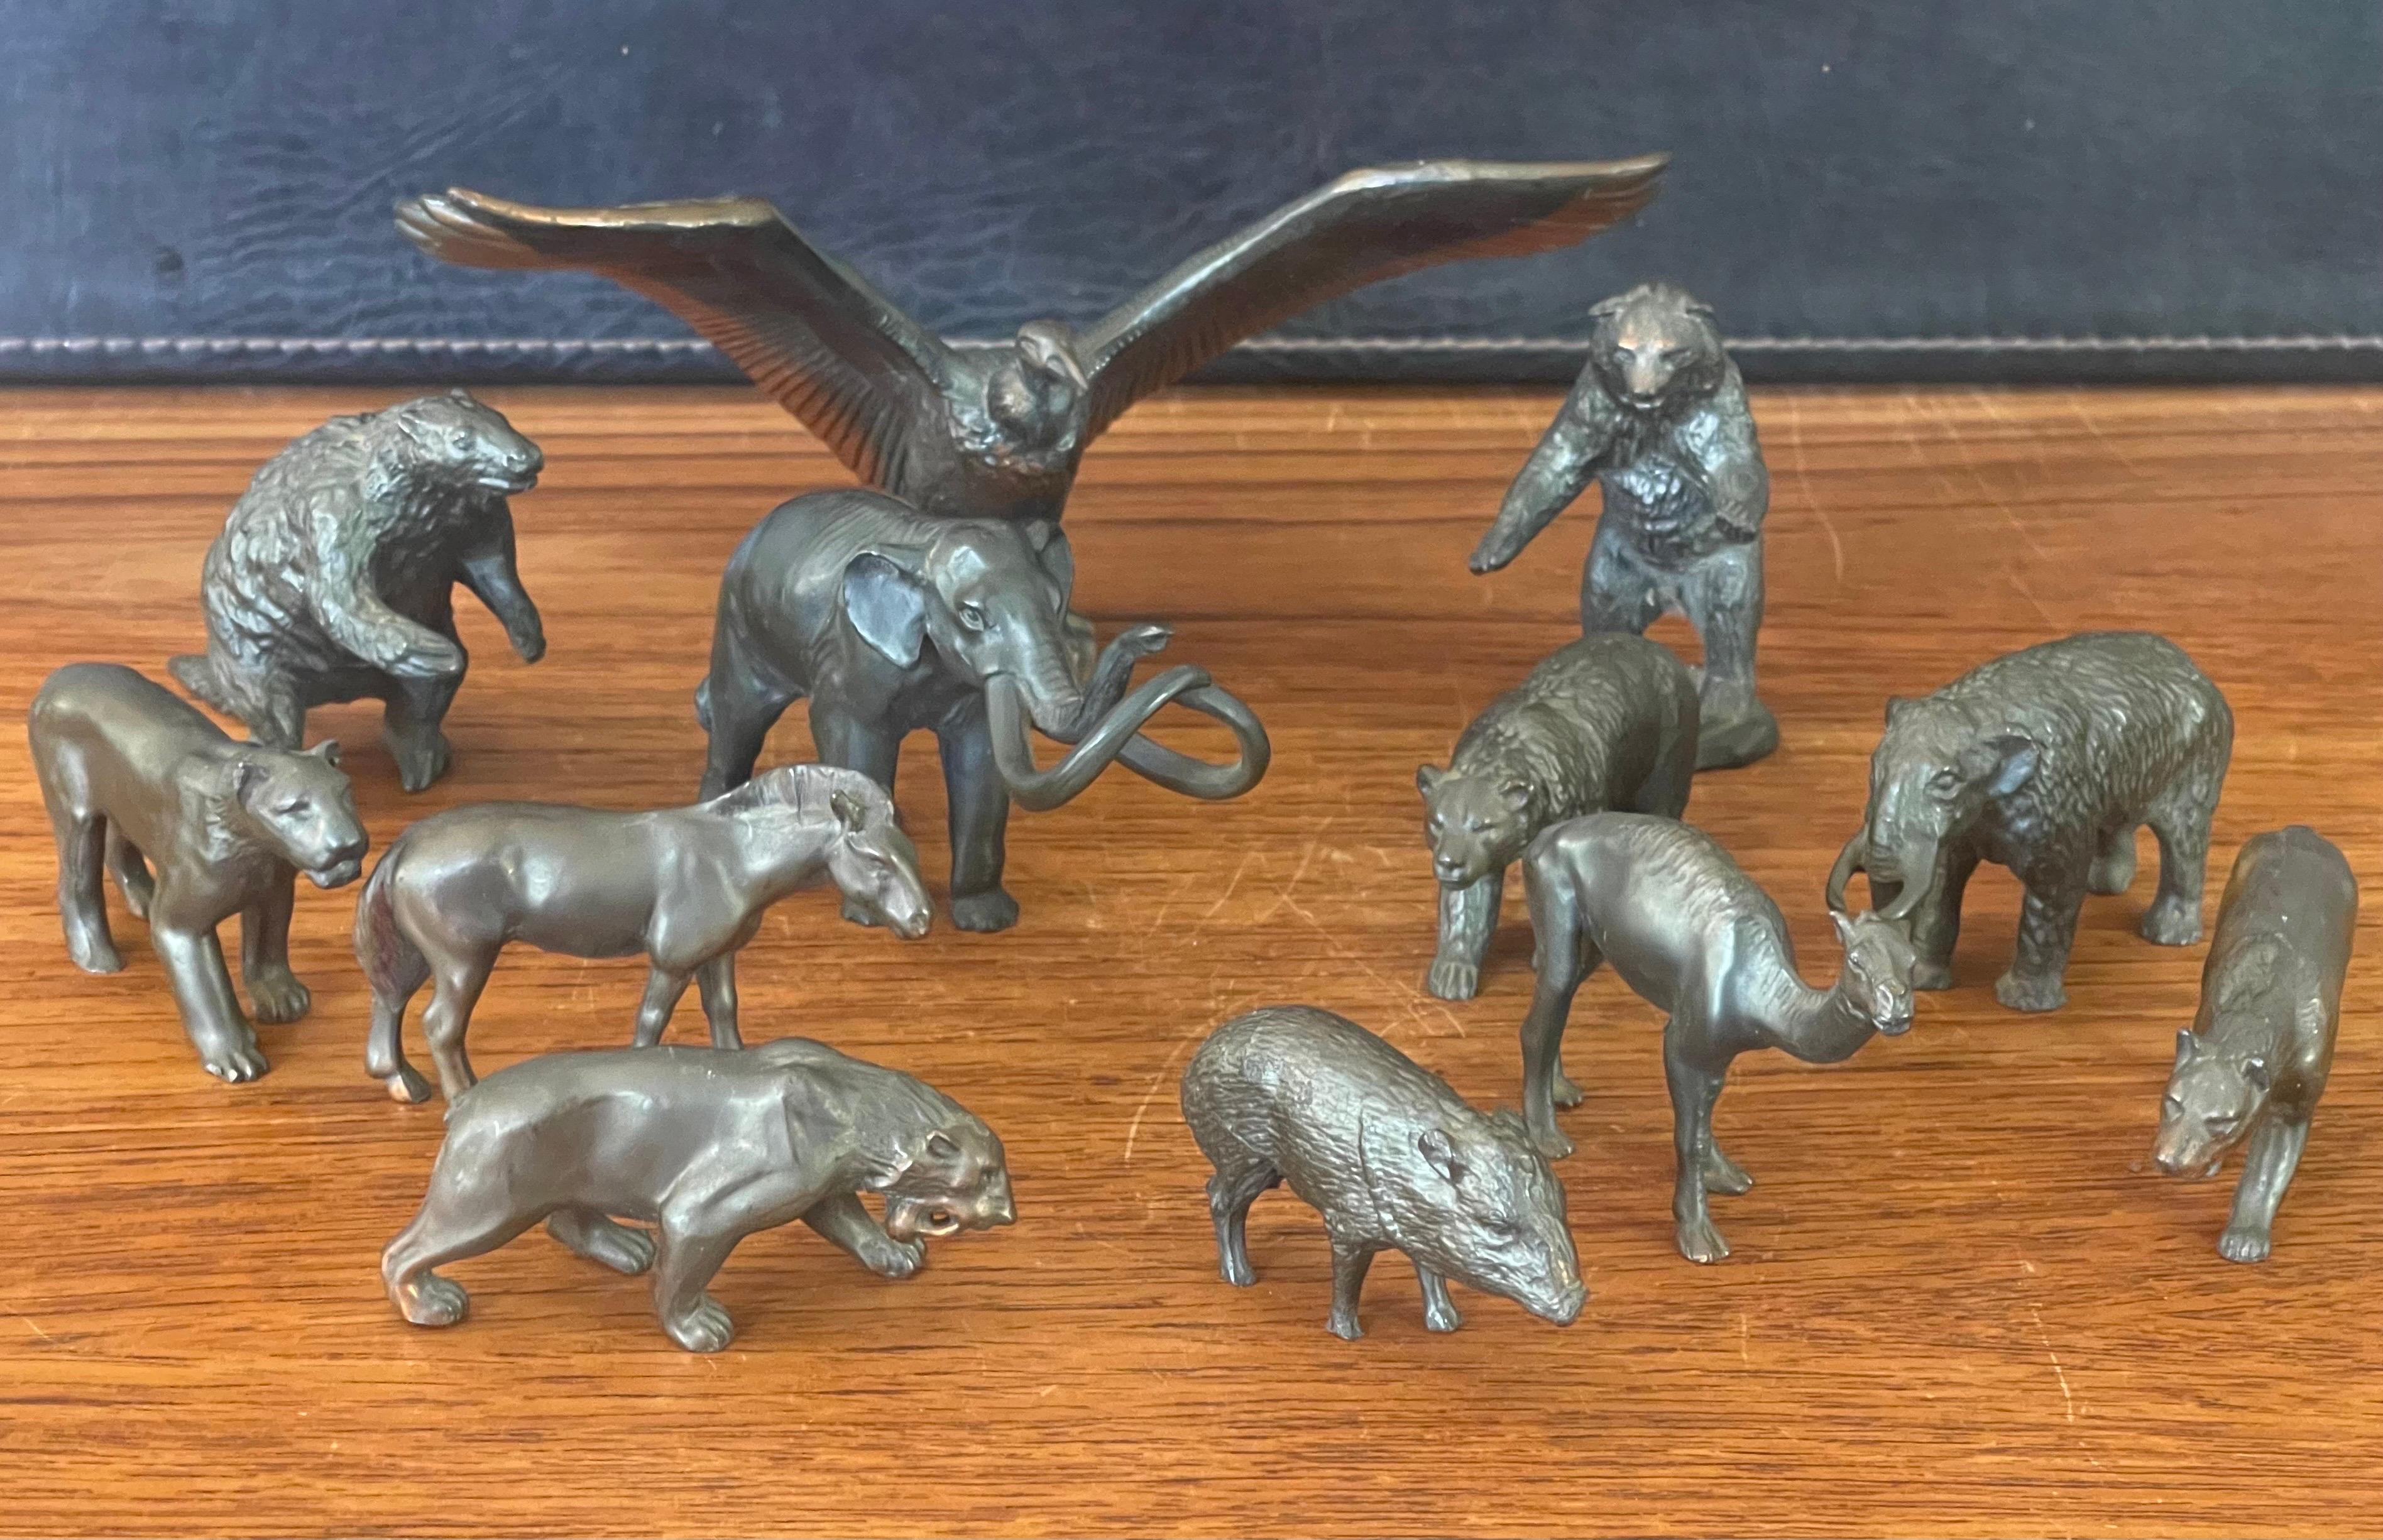 Une collection très rare de douze sculptures miniatures en bronze de mammifères de l'âge de glace, créées par Wm Otto pour le musée et la boutique de souvenirs de Rancho La Brea Tar Pits, vers la fin des années 1950. Les sculptures ont été conçues à